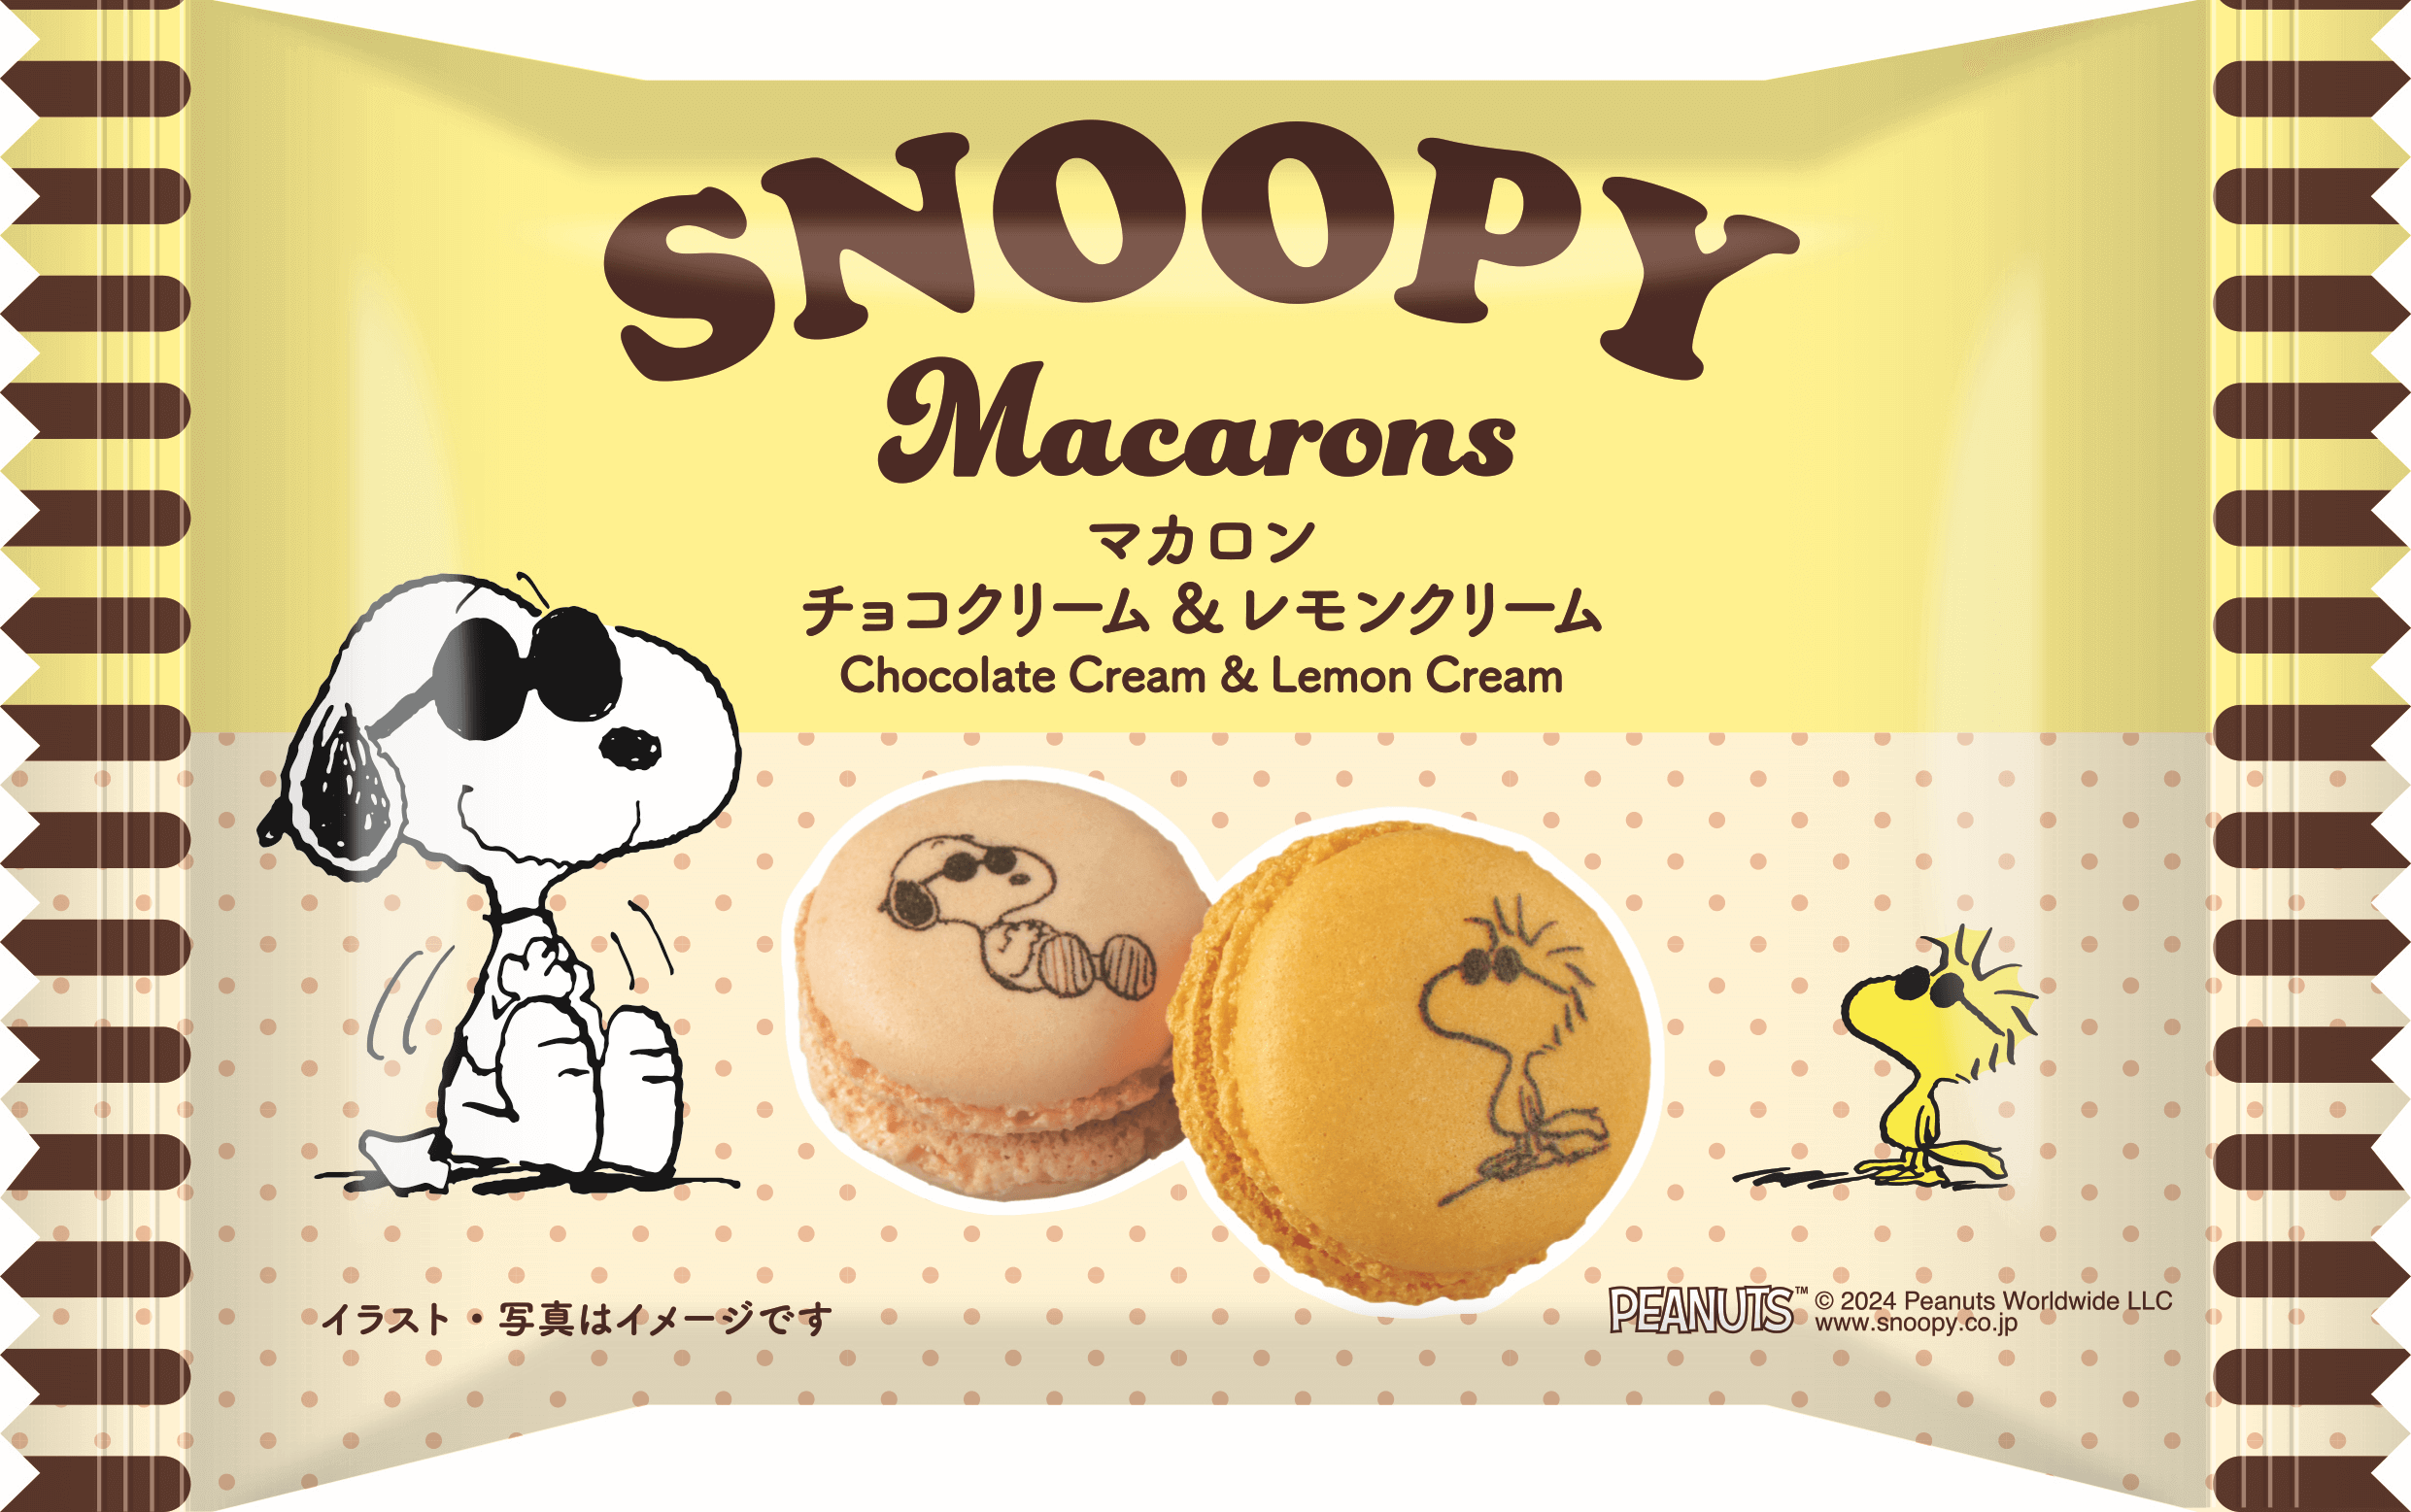 ファミリーマートの『SNOOPY Family Campaign(スヌーピーファミリーキャンペーン)』-マカロンチョコクリーム＆レモンクリーム